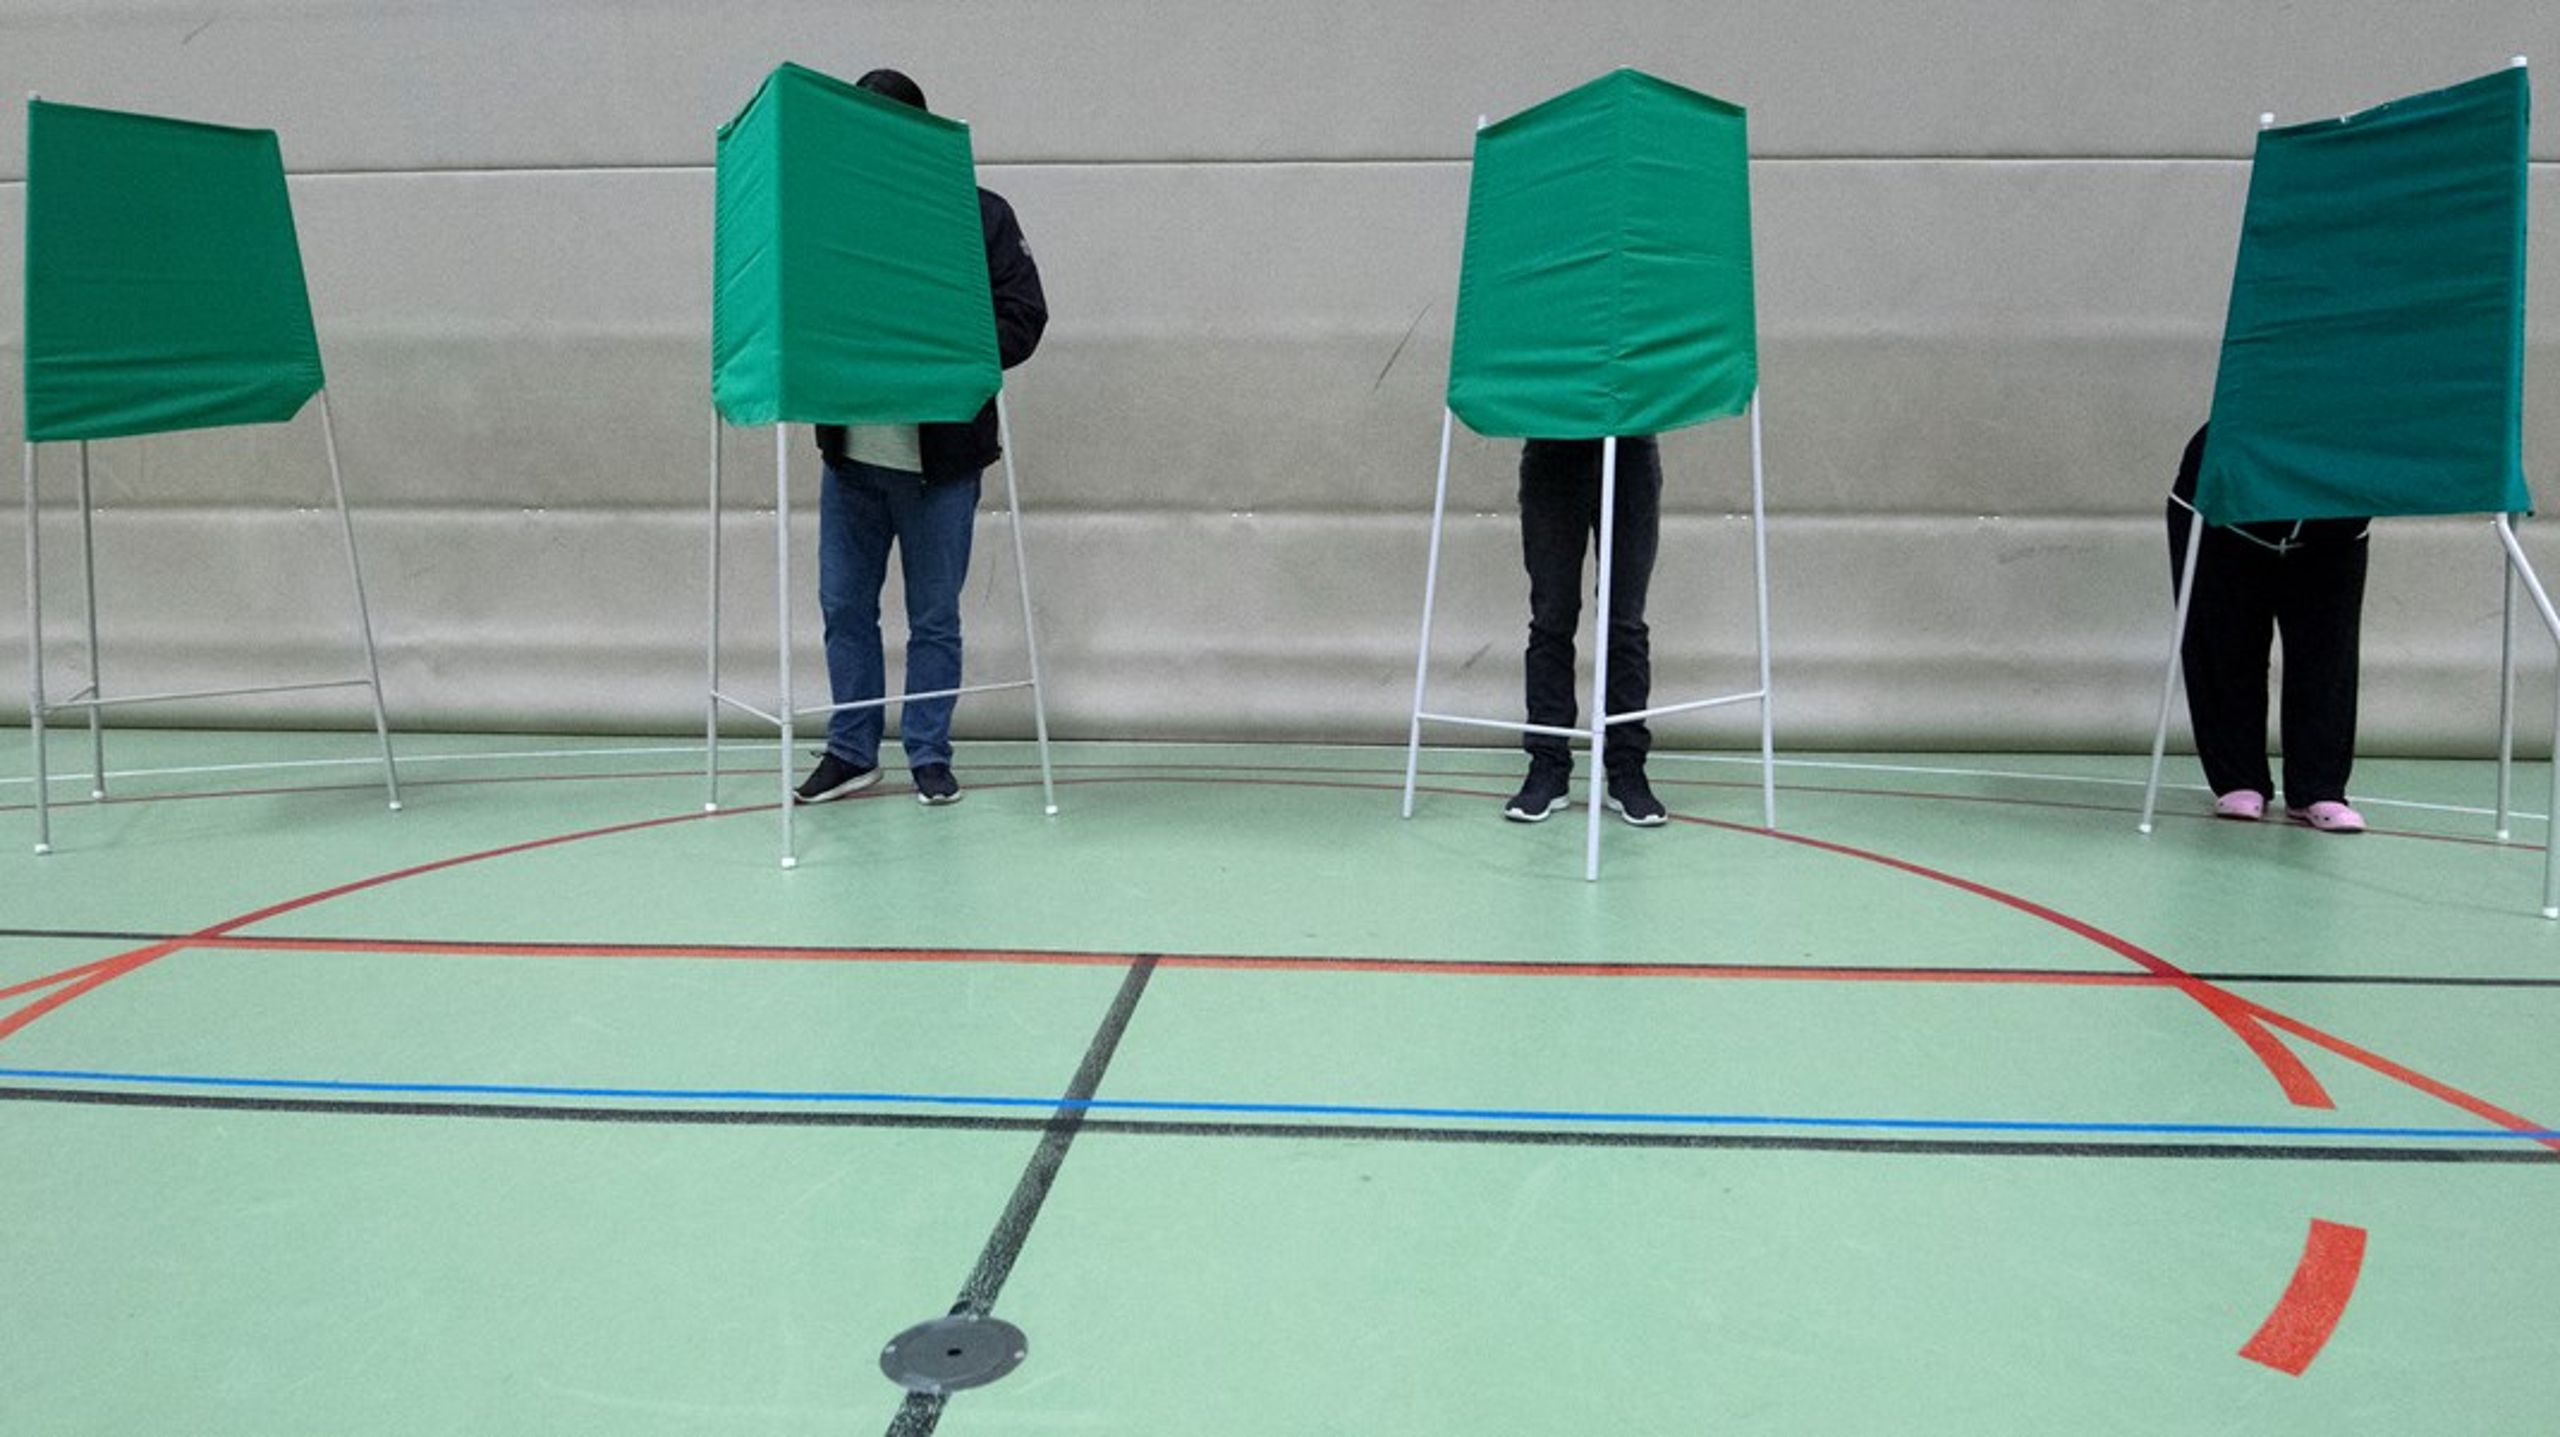 ”Väljarinformationen i val- och röstningslokaler ska vara anpassad till olika väljargrupper.”